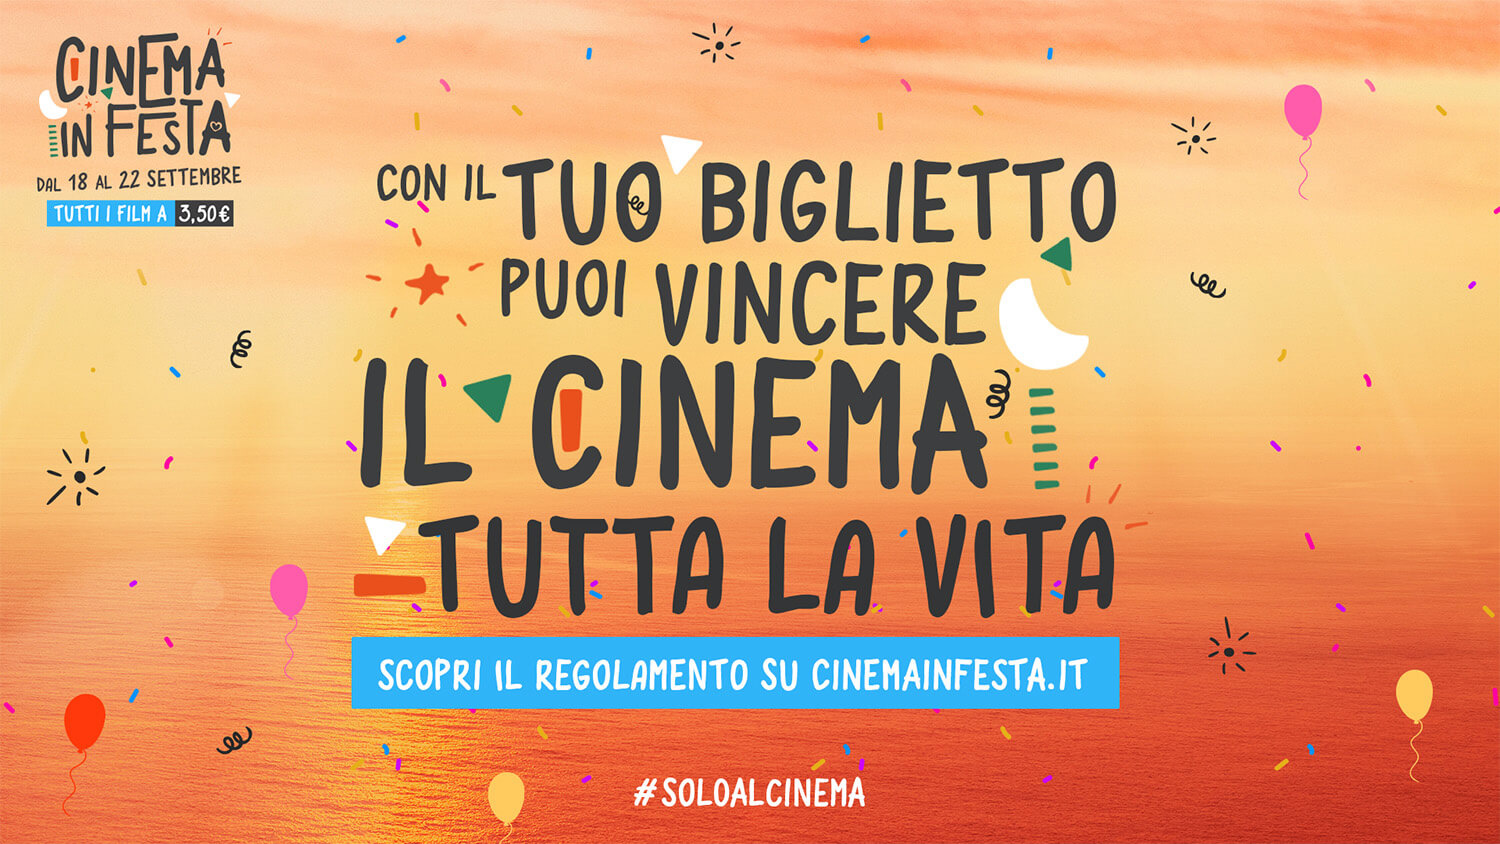 Cinema in Festa 2022 - Vinci il Cinema per tutta la vita